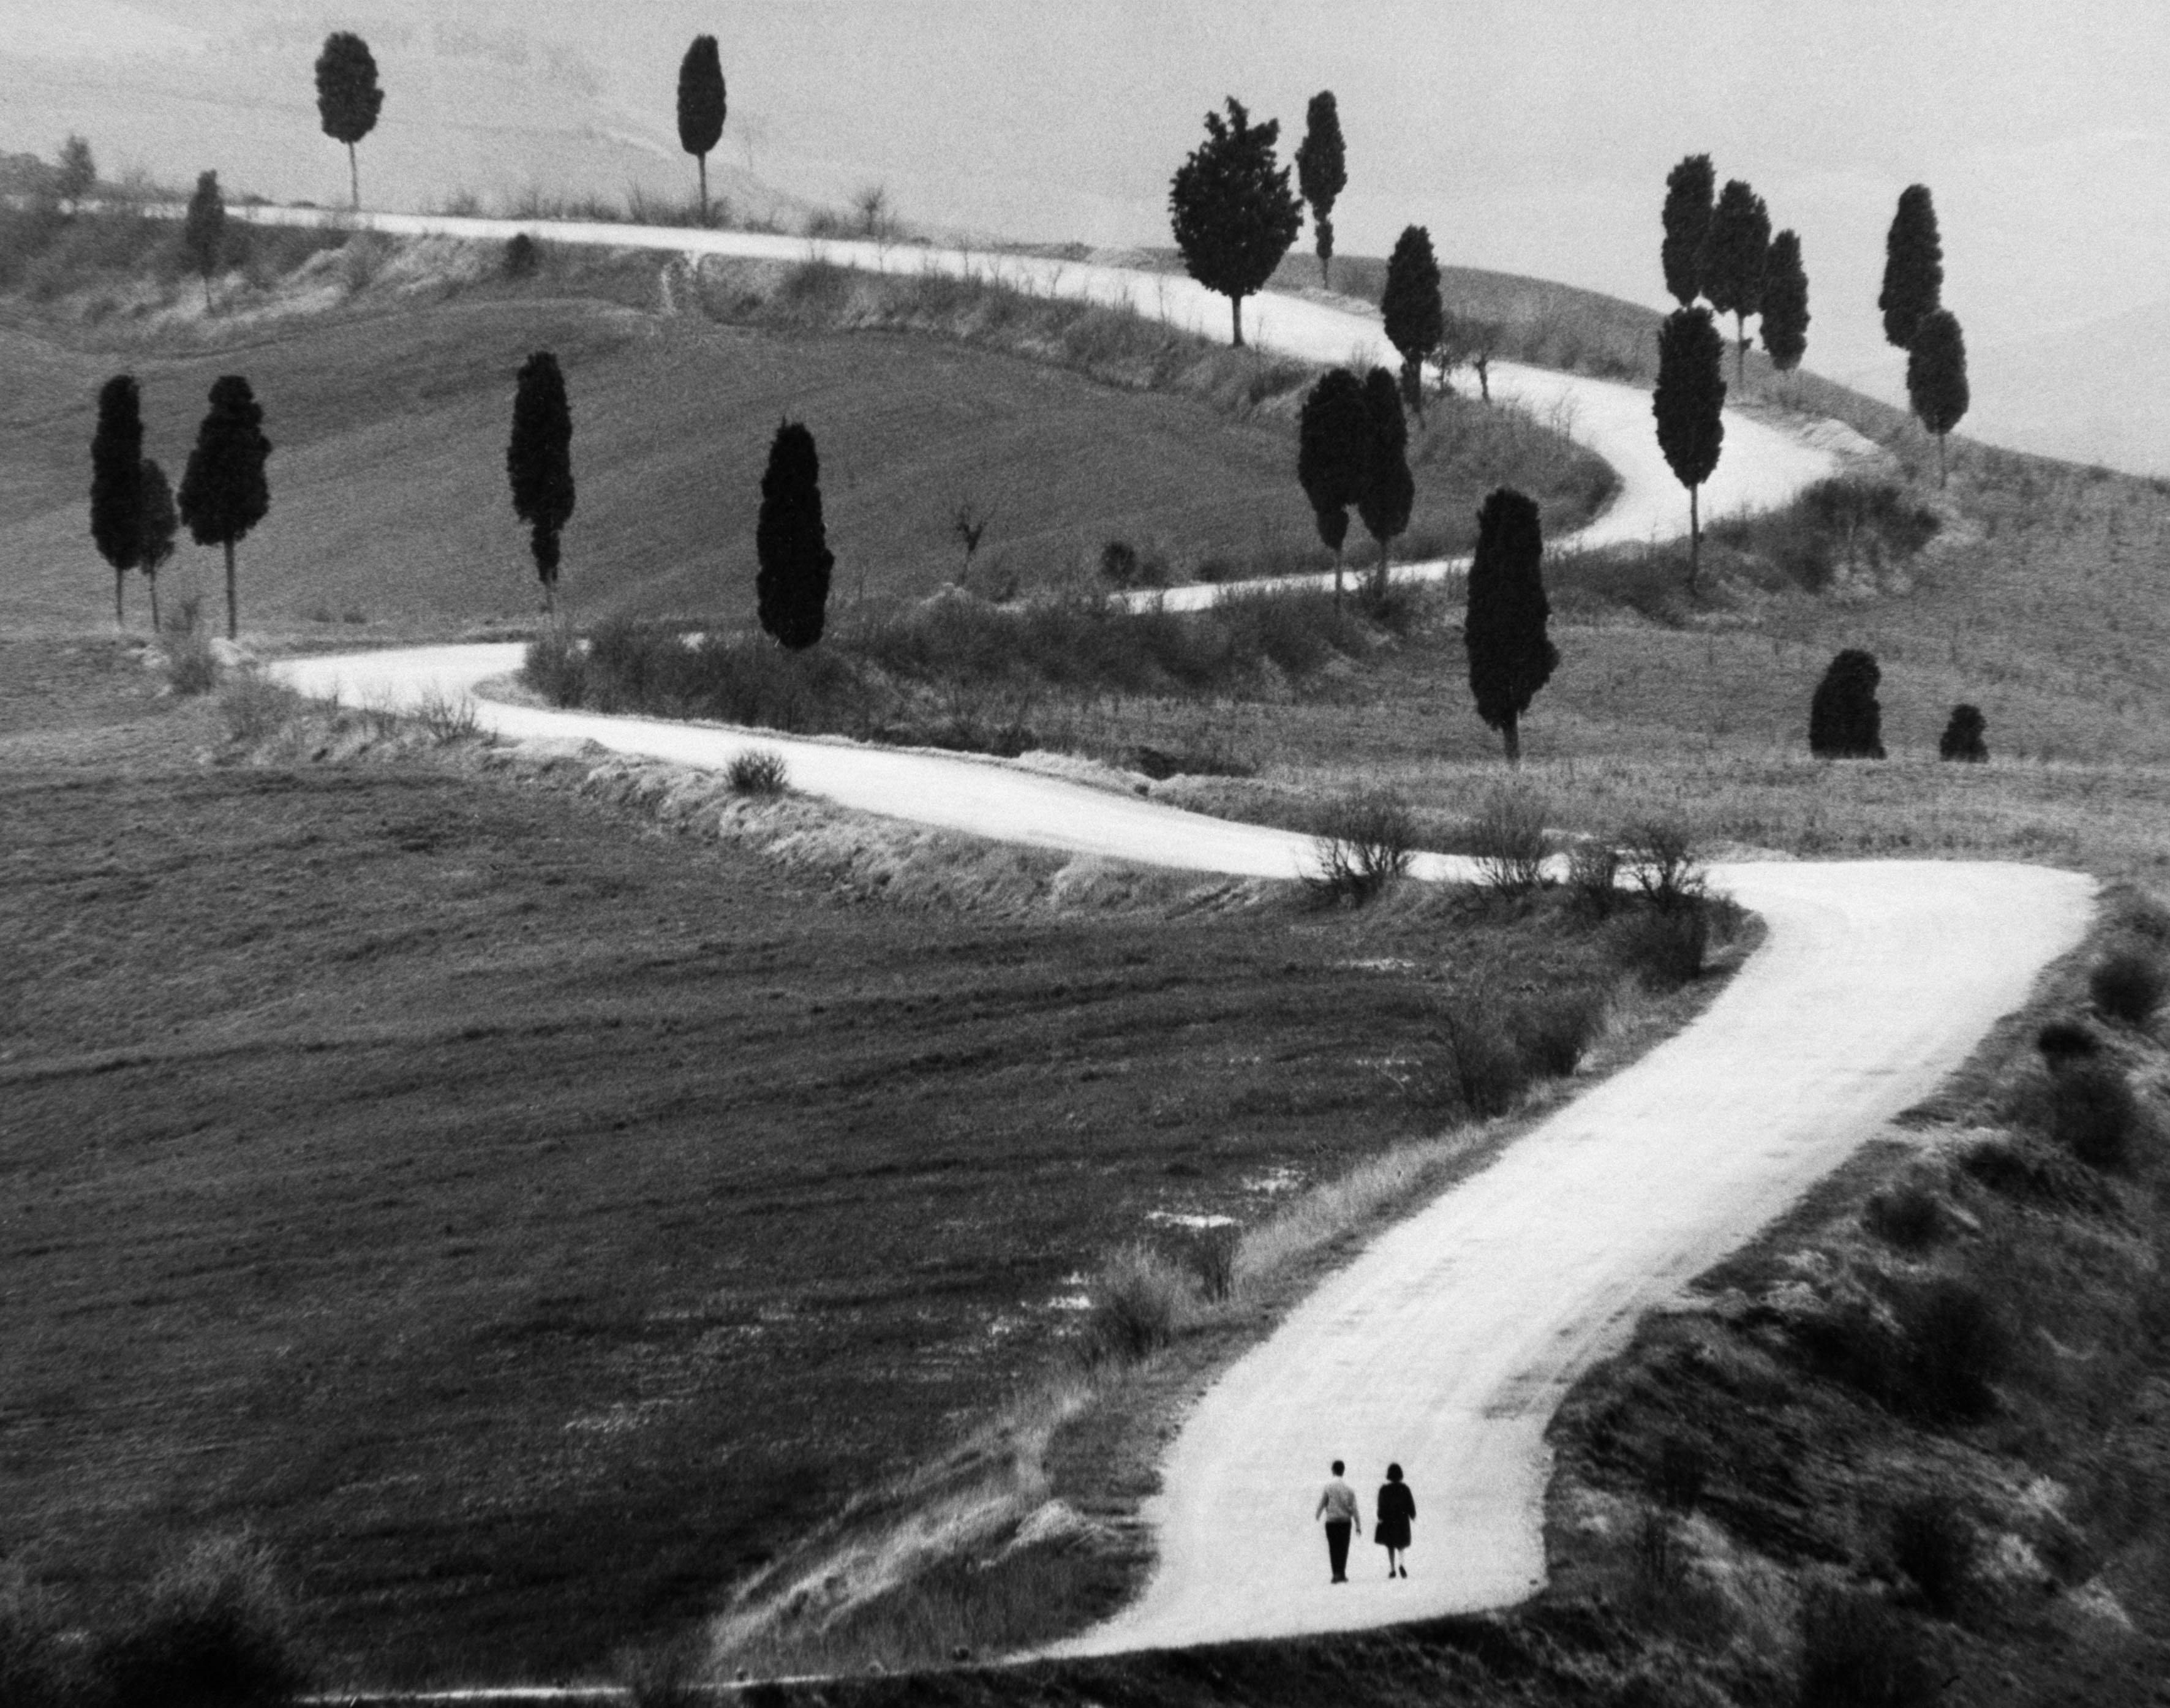 Toscana 1965 © Gianni Berengo Gardin/Courtesy Fondazione Forma per la Fotografia